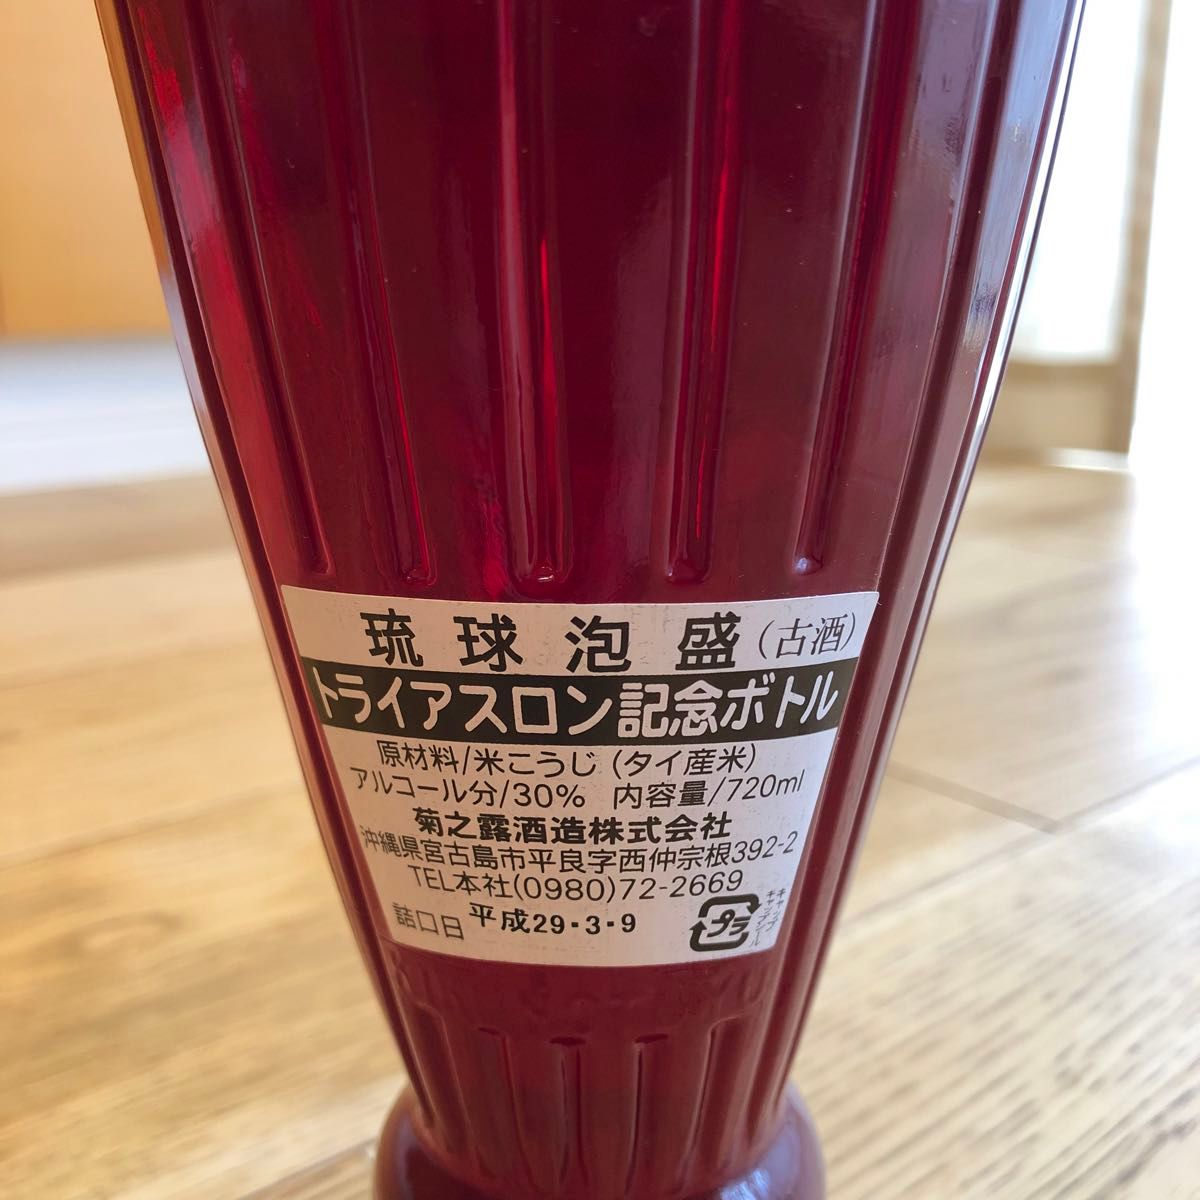 第33回全日本トライアスロン宮古島大会記念ボトル 琉球泡盛 古酒 菊之露 720ml 30度 